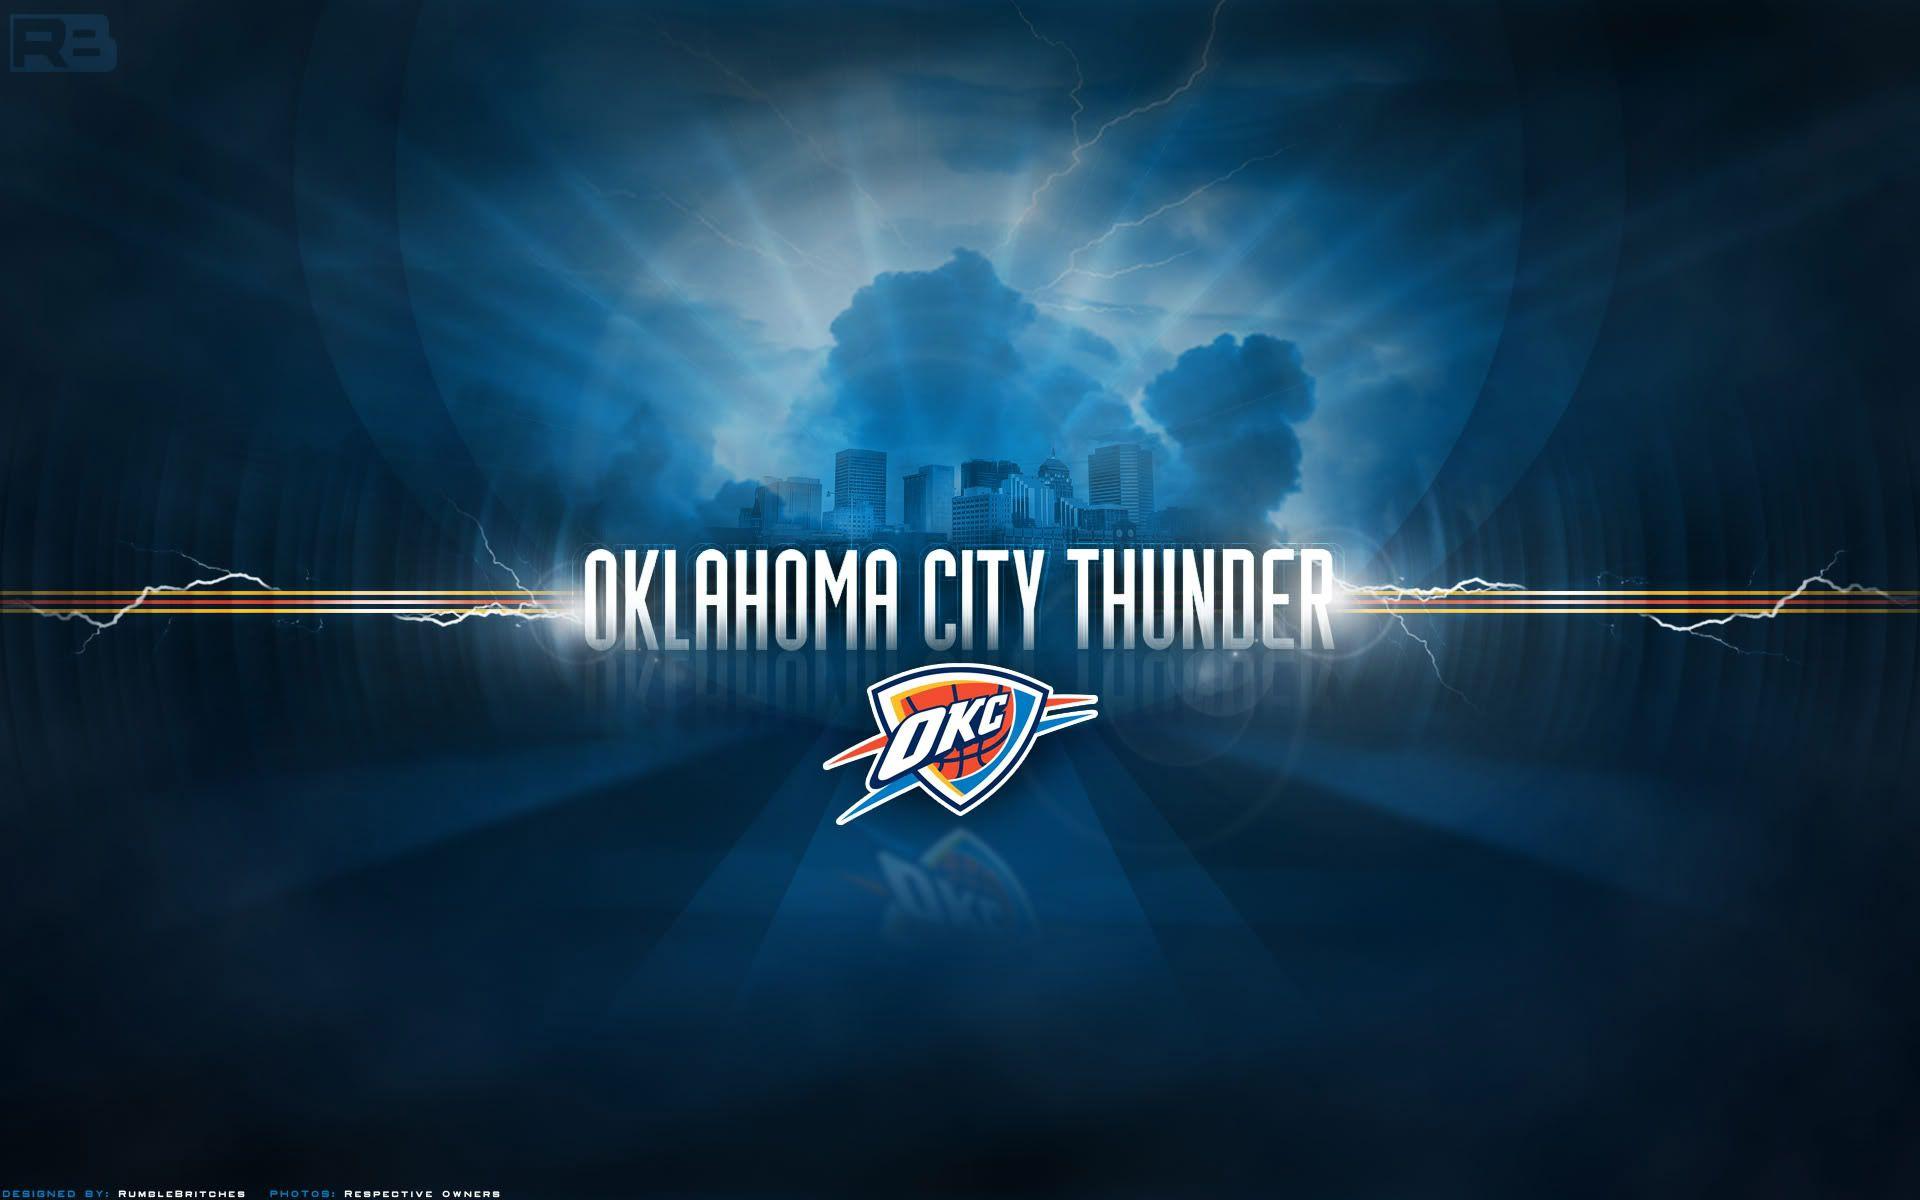 Oklahoma City Thunder Wallpaper. Basketball Wallpaper at